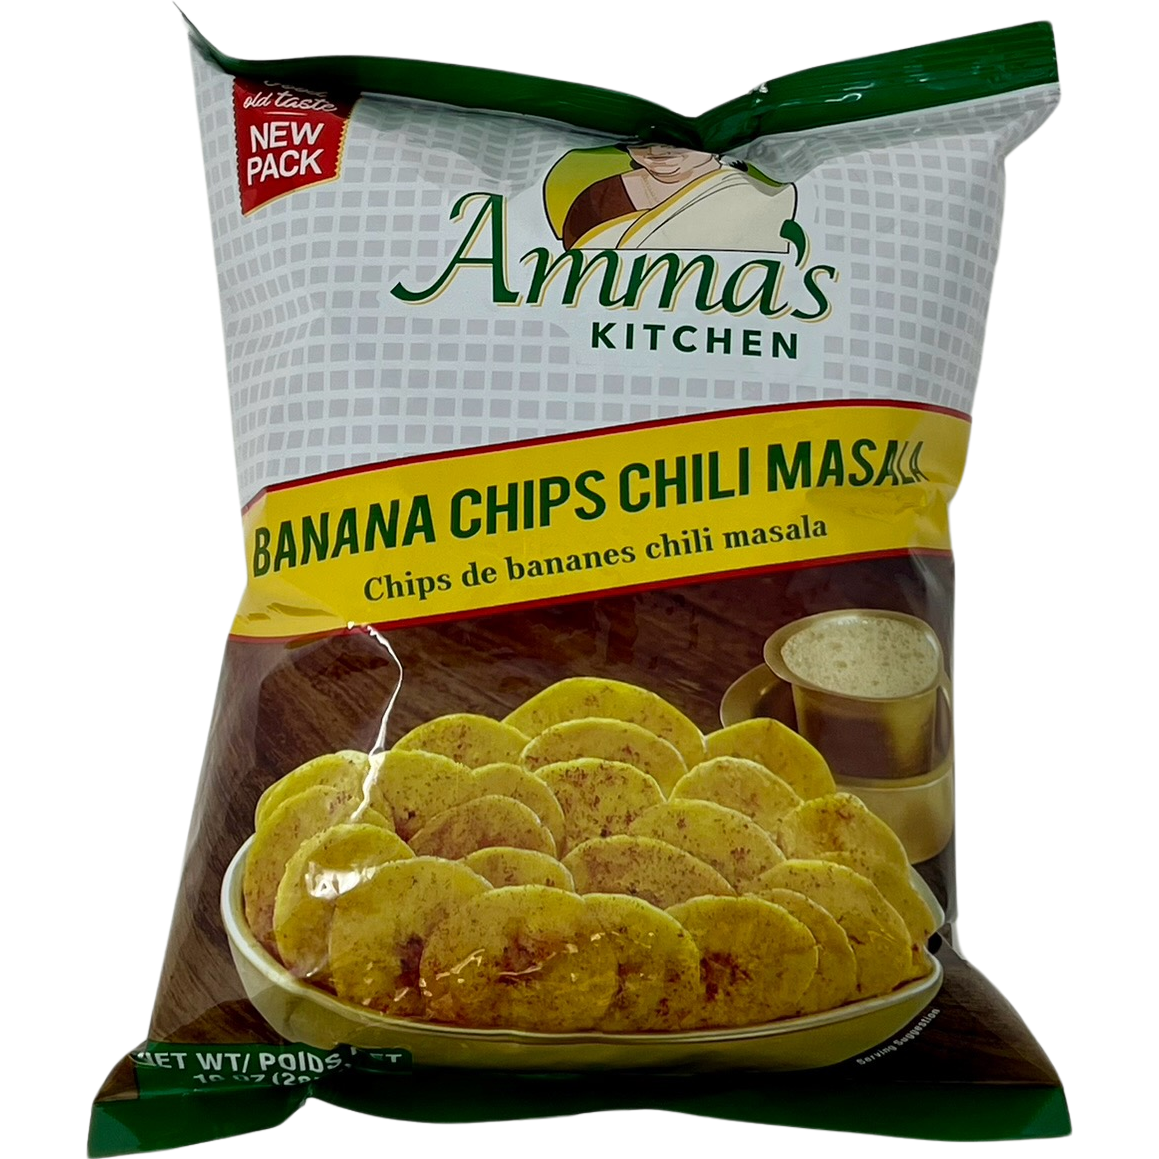 Amma's Kitchen Banana Chips Chilli Masala - 285 Gm (10 Oz)